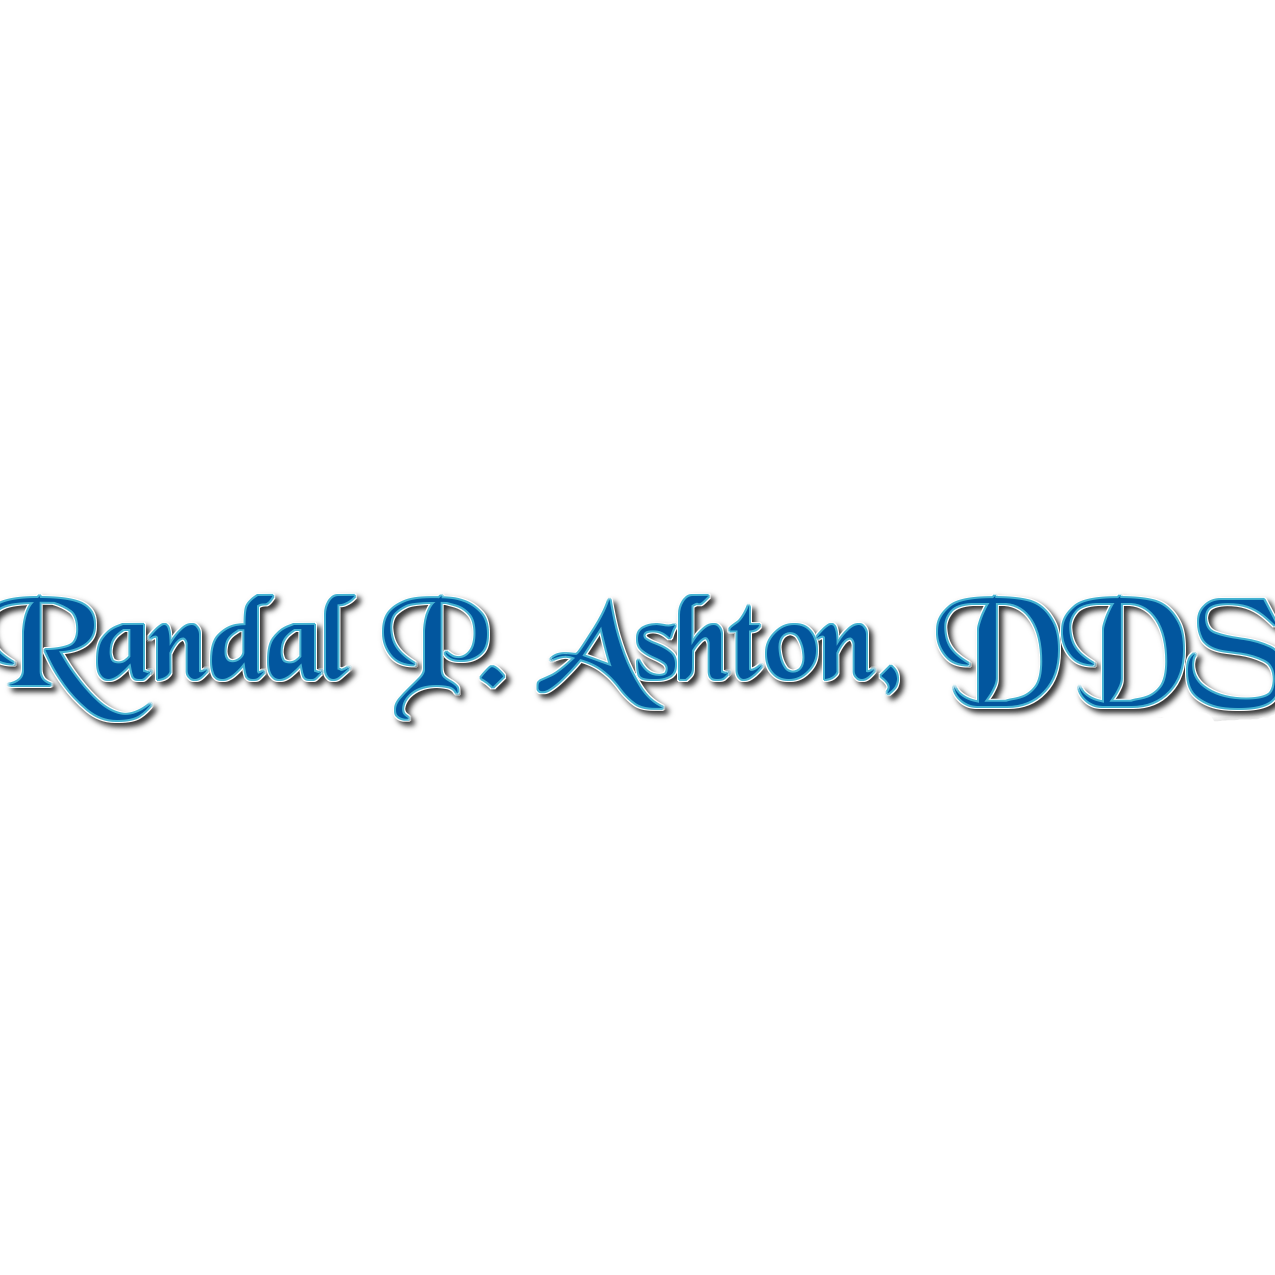 Randal P. Ashton, DDS - Danville, IL 61832 - (217)442-0987 | ShowMeLocal.com